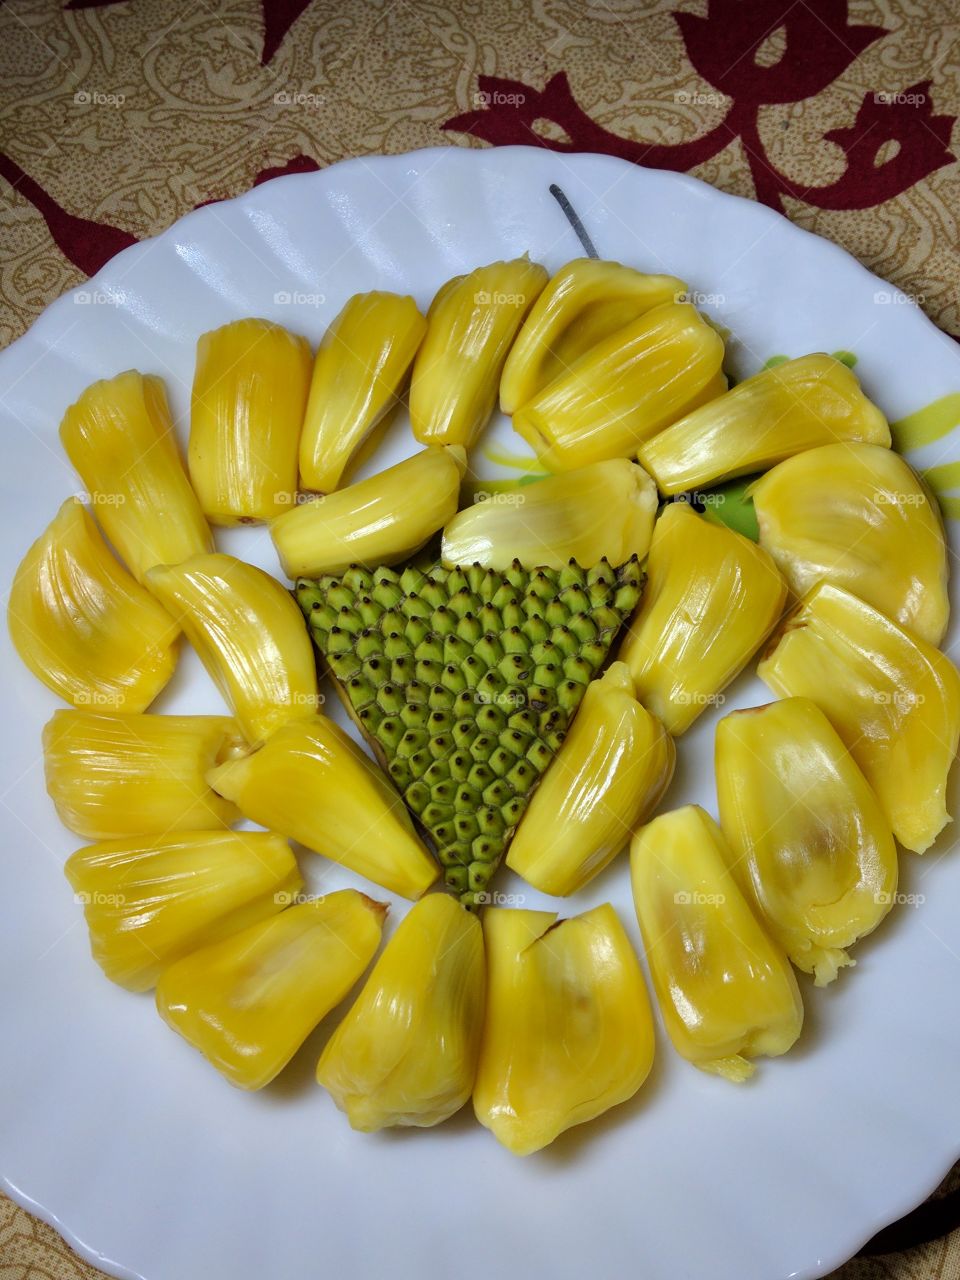 കൊതിയൂറും തേൻ വരിക്ക ( Honey jackfruit)